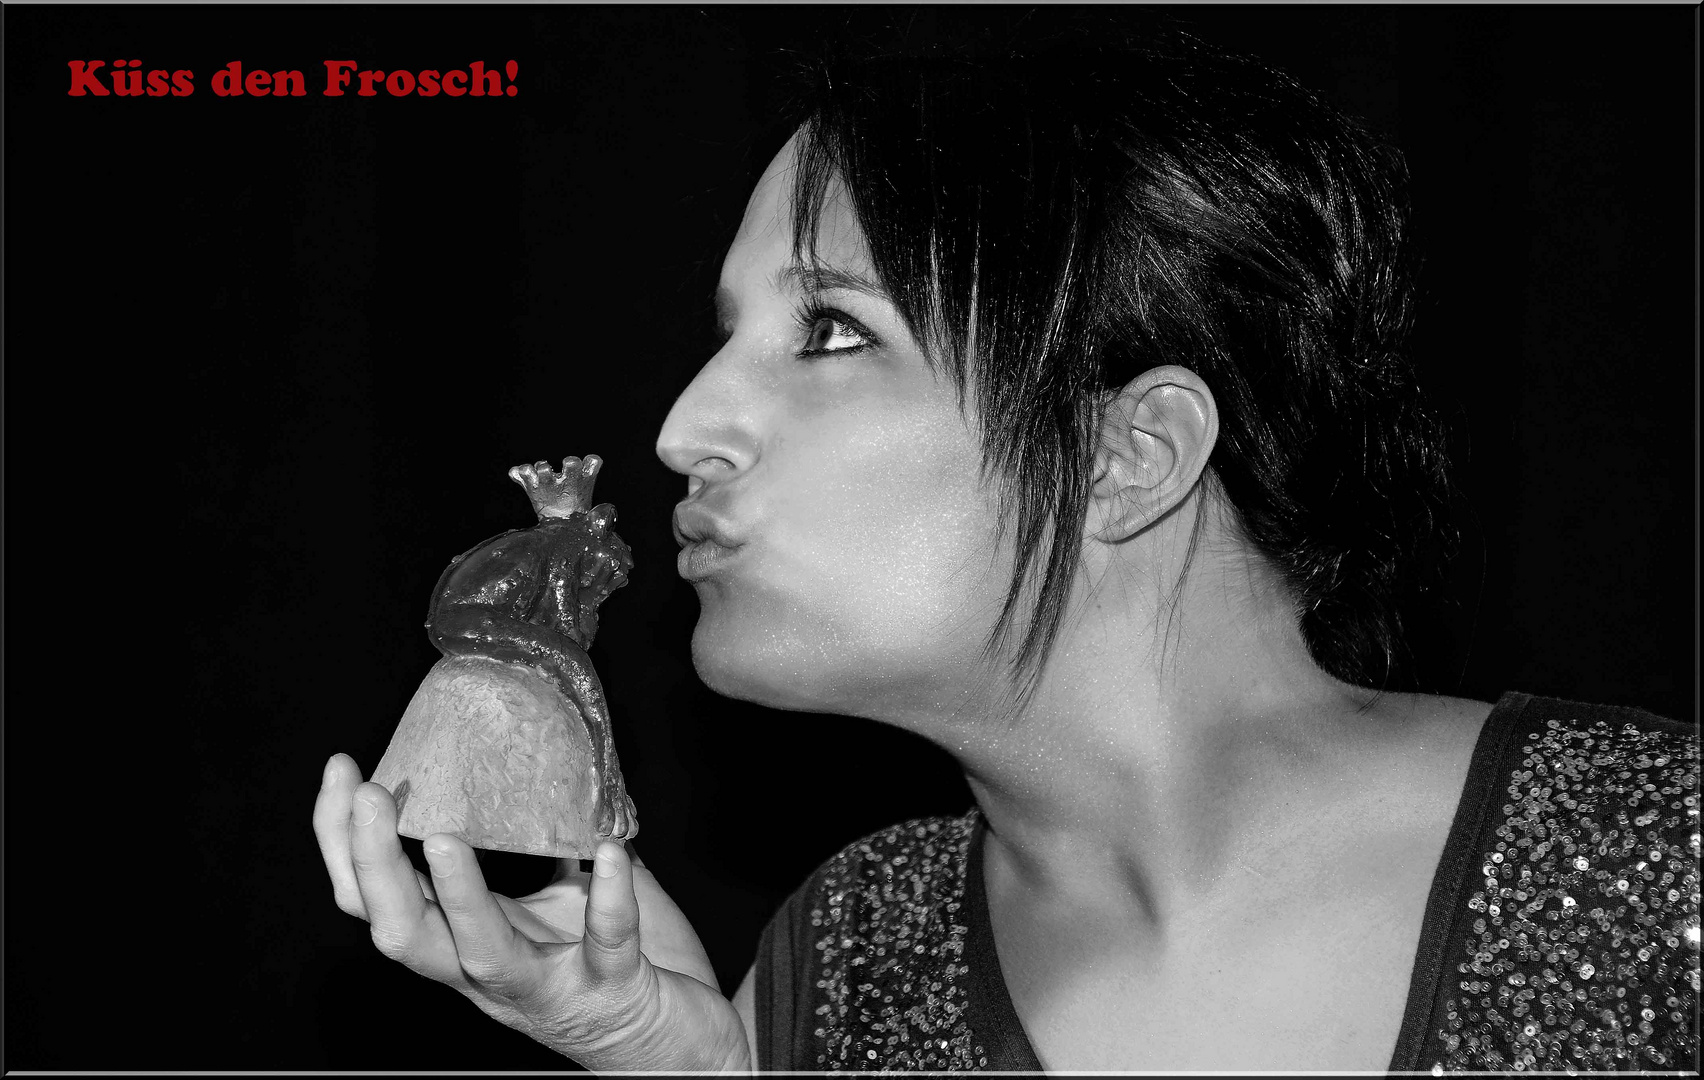 Küss den Frosch!